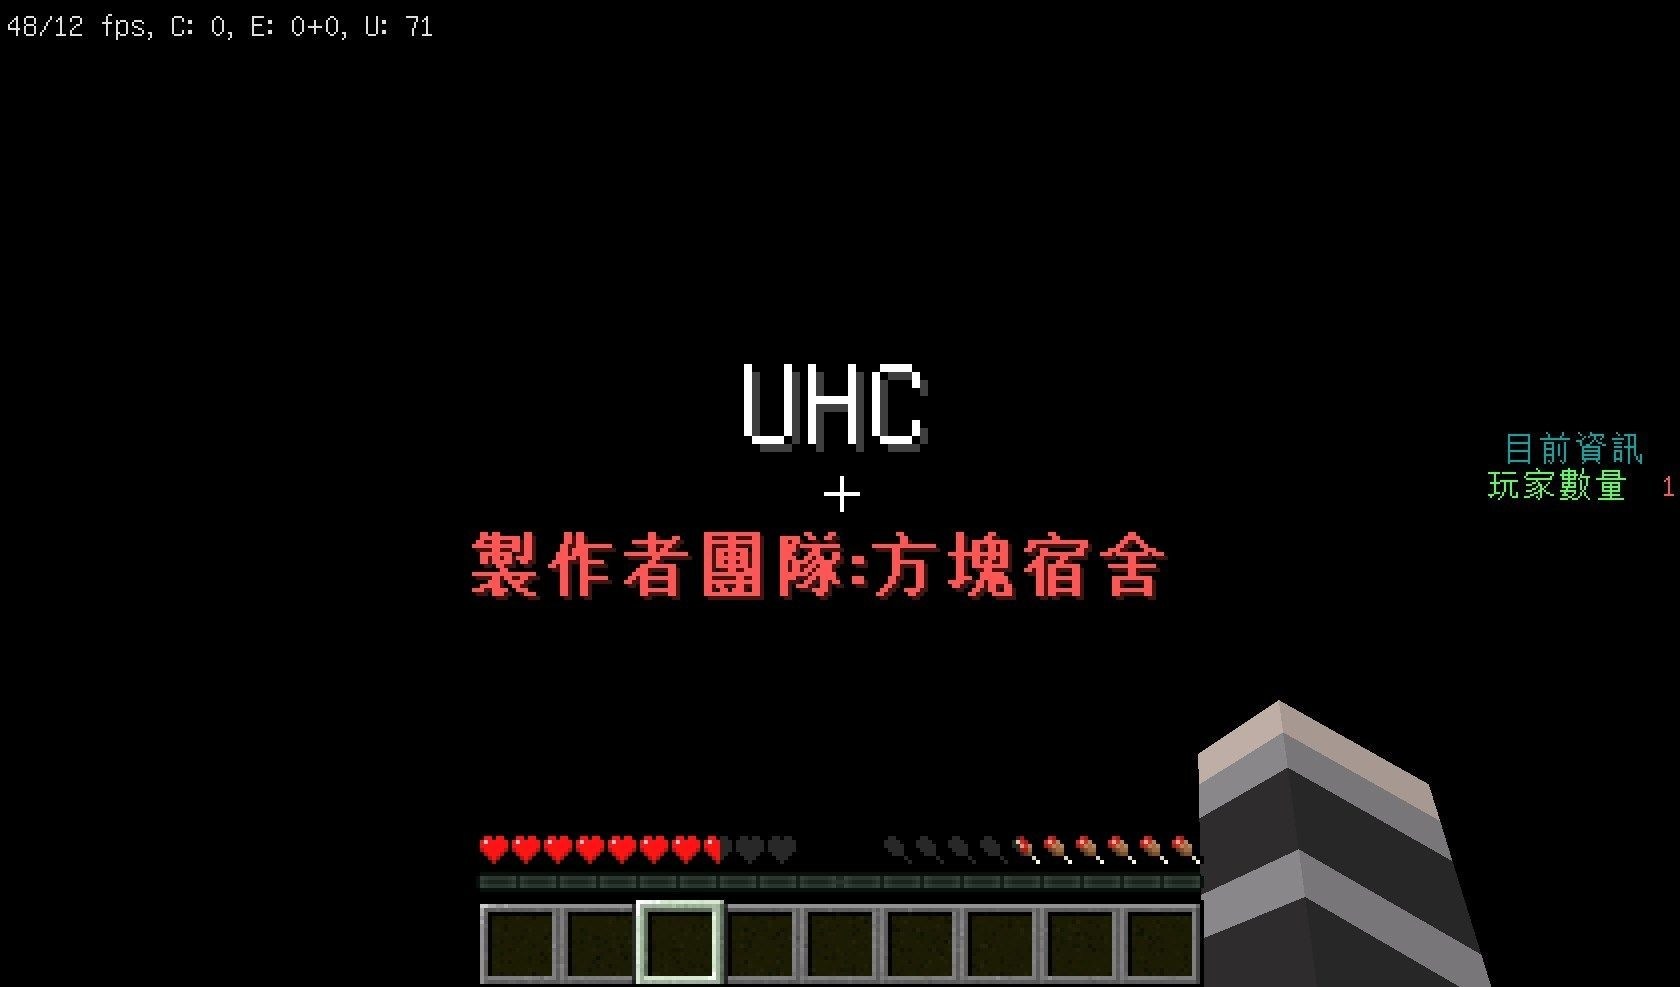 心得 指令包 間諜模式uhc釋出 還沒完的快來下載唷 3 方塊宿舍 Minecraft 我的世界 當個創世神 哈啦板 巴哈姆特